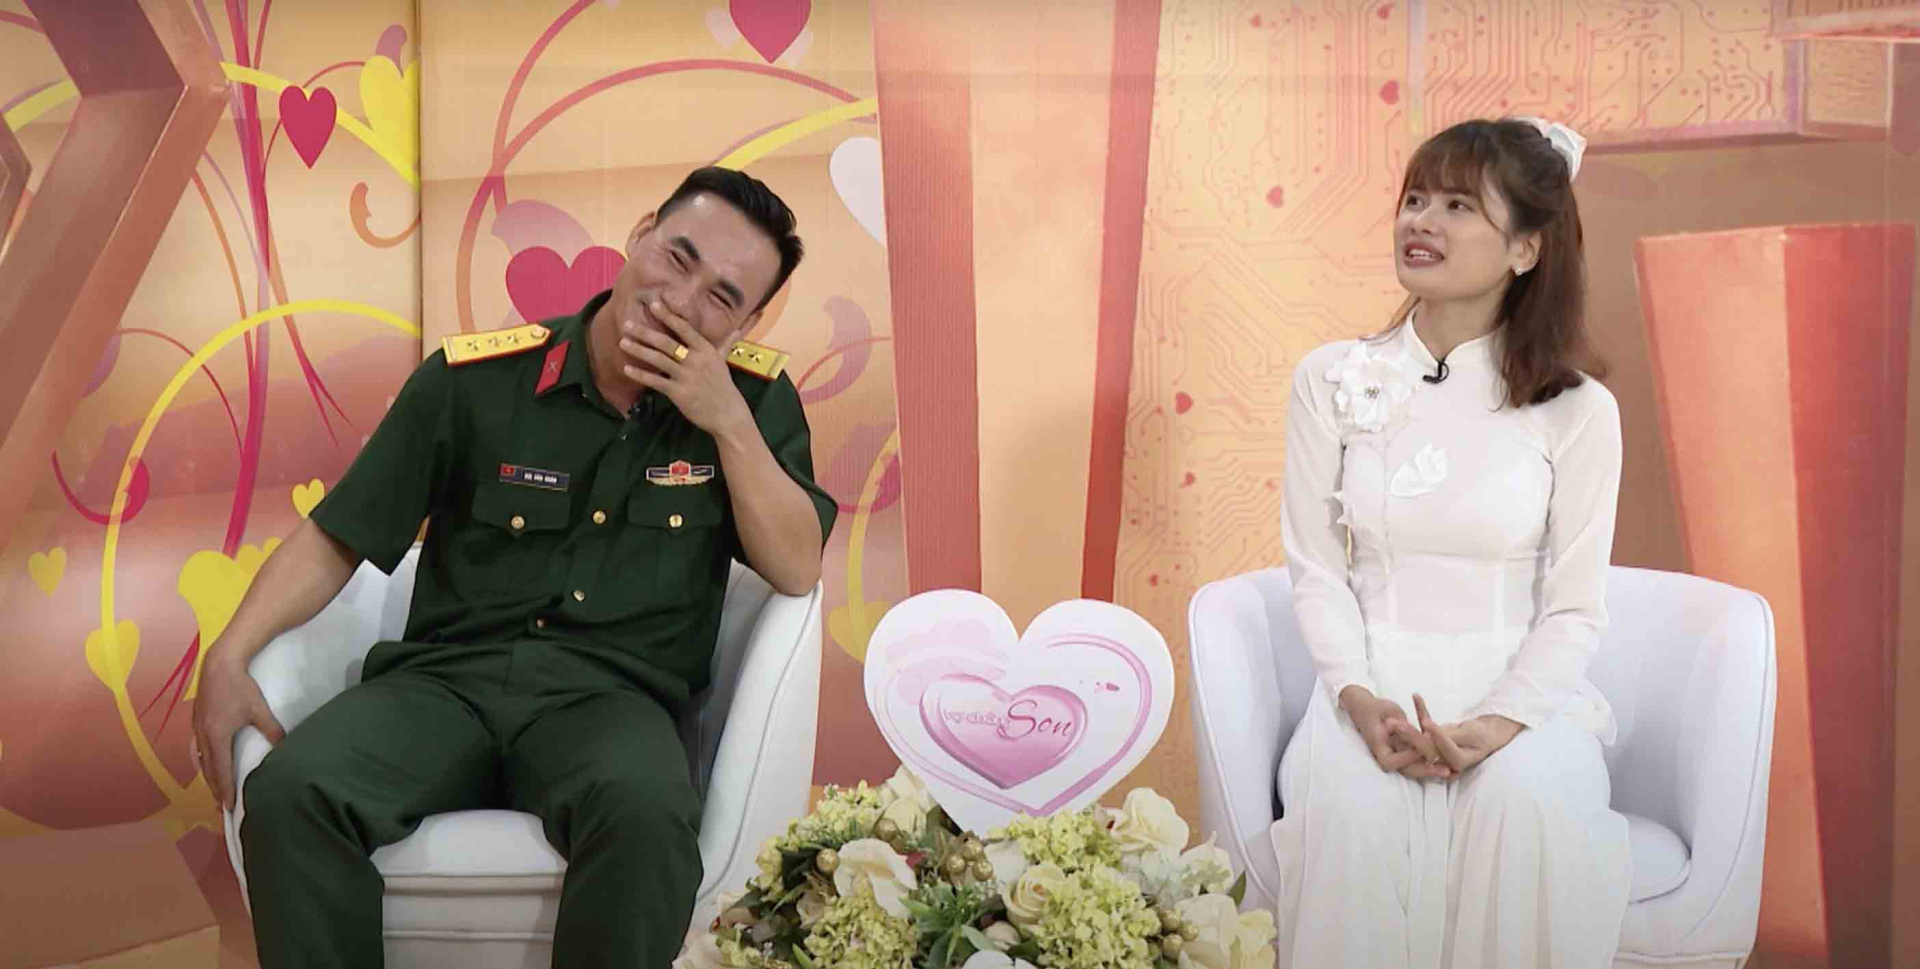 Hiểu cho sự hy sinh của vợ nên Văn Hoàn luôn cố gắng tranh thủ để đồng hành cùng vợ qua các cuộc gọi video, cùng nhau quyết định từng món đồ cho lễ cưới.